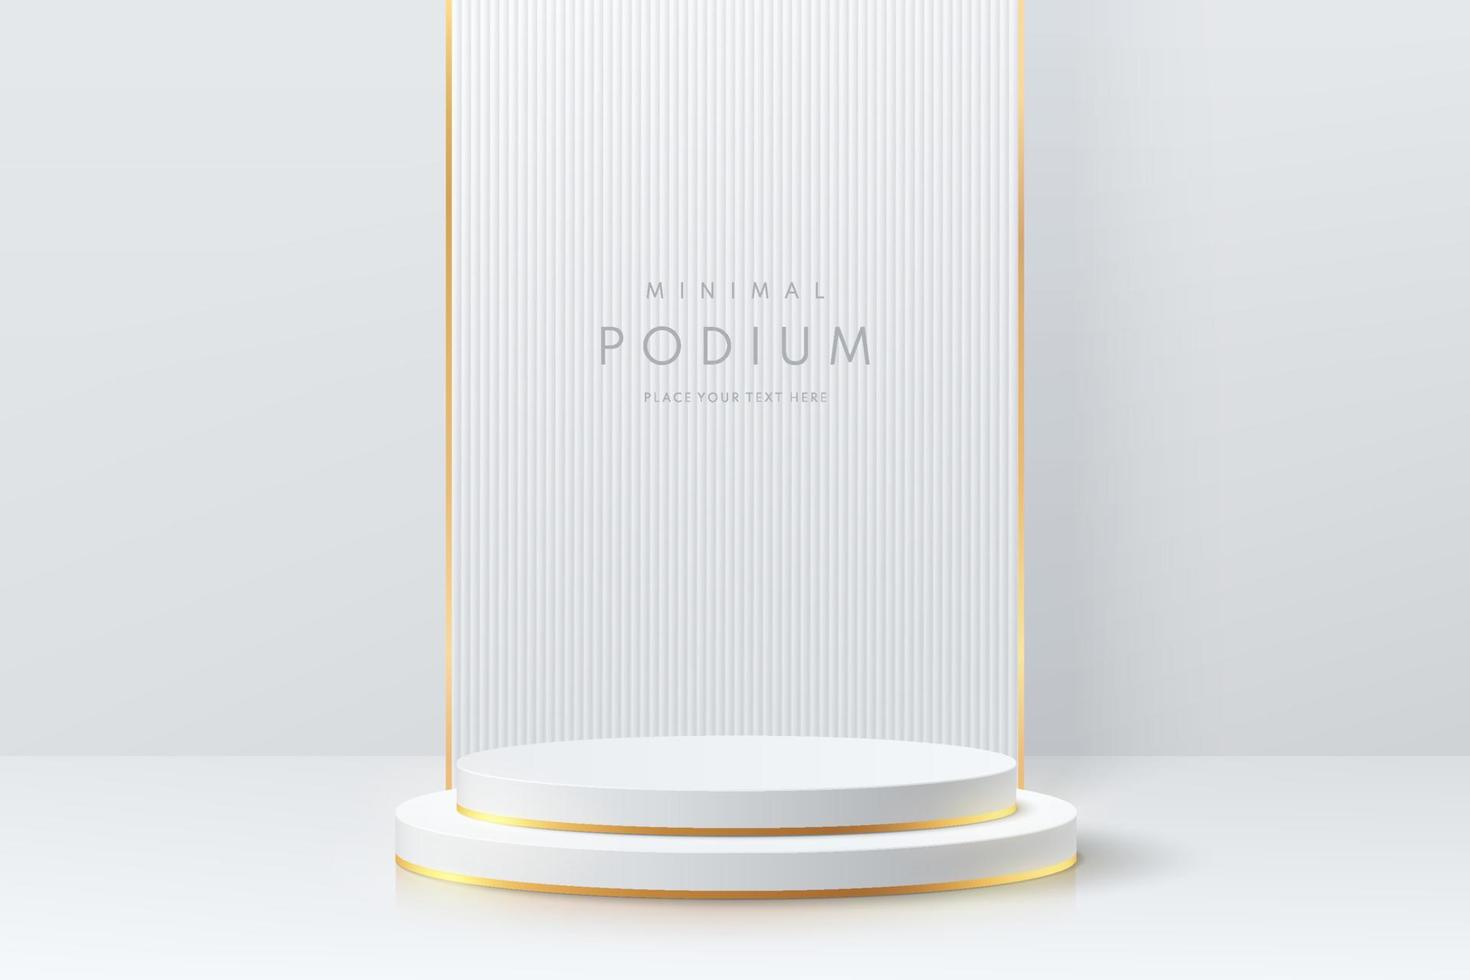 realistico podio con piedistallo a cilindro bianco e oro con sfondo a motivo verticale. stanza studio astratta di vettore con forme geometriche 3d. scena minimale di lusso per vetrina prodotti, esposizione promozionale.